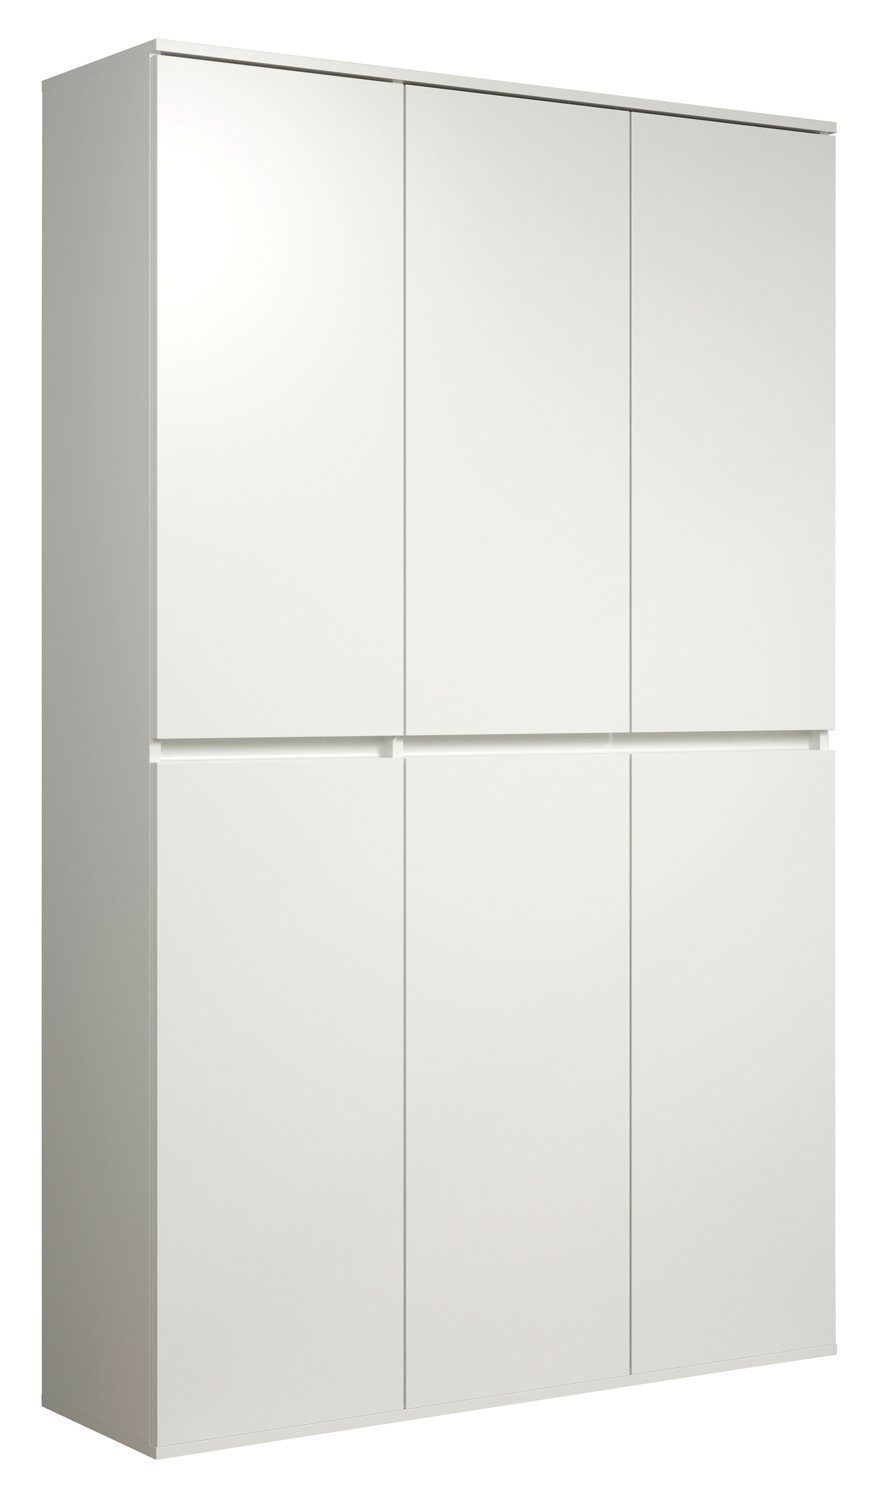 Mehrzweckschrank NEVADA, B 111 H Weiß, cm, Türen 6 x 191 cm